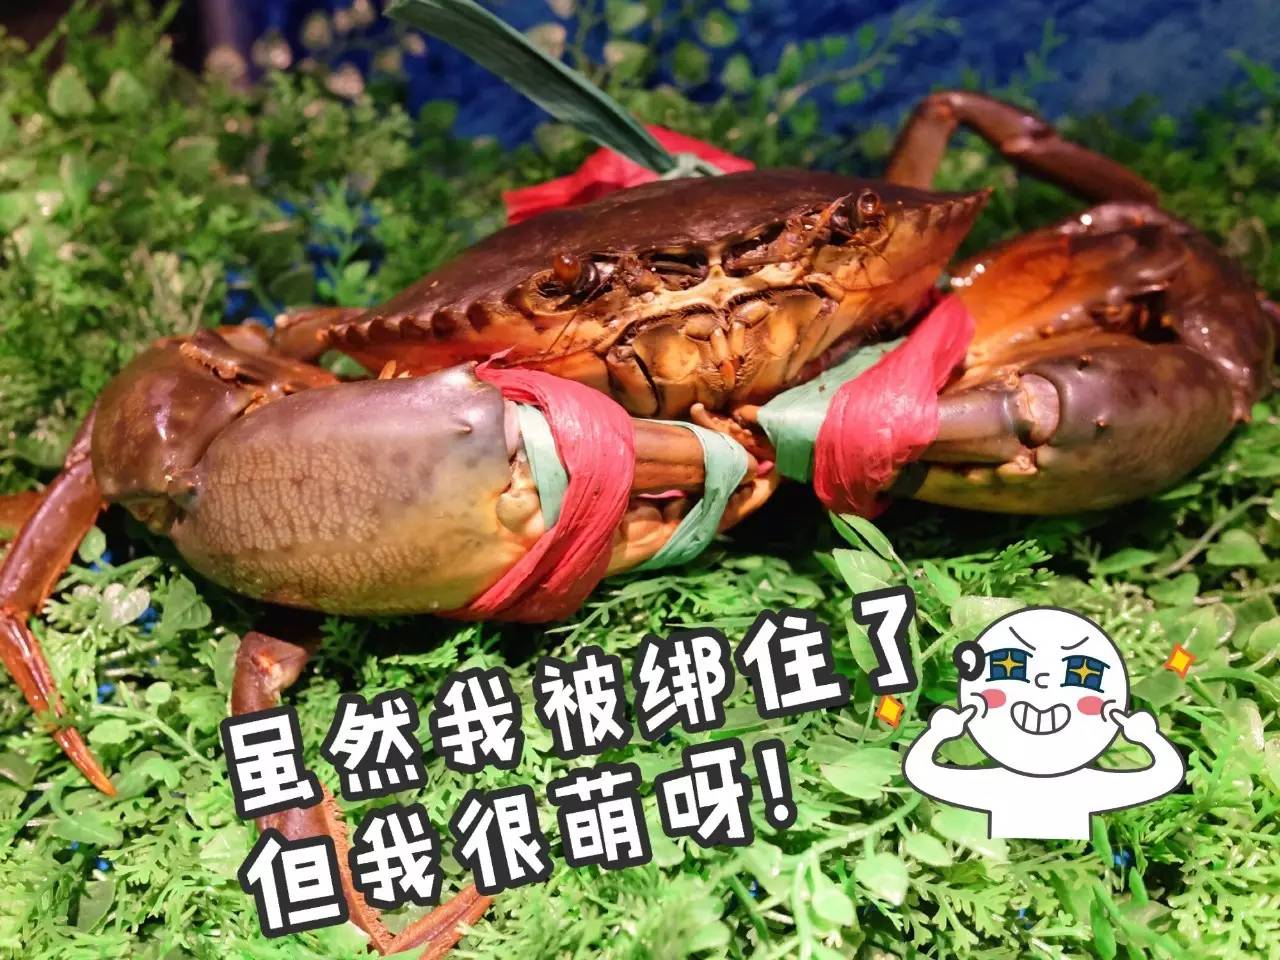 炒螃蟹表情包图片